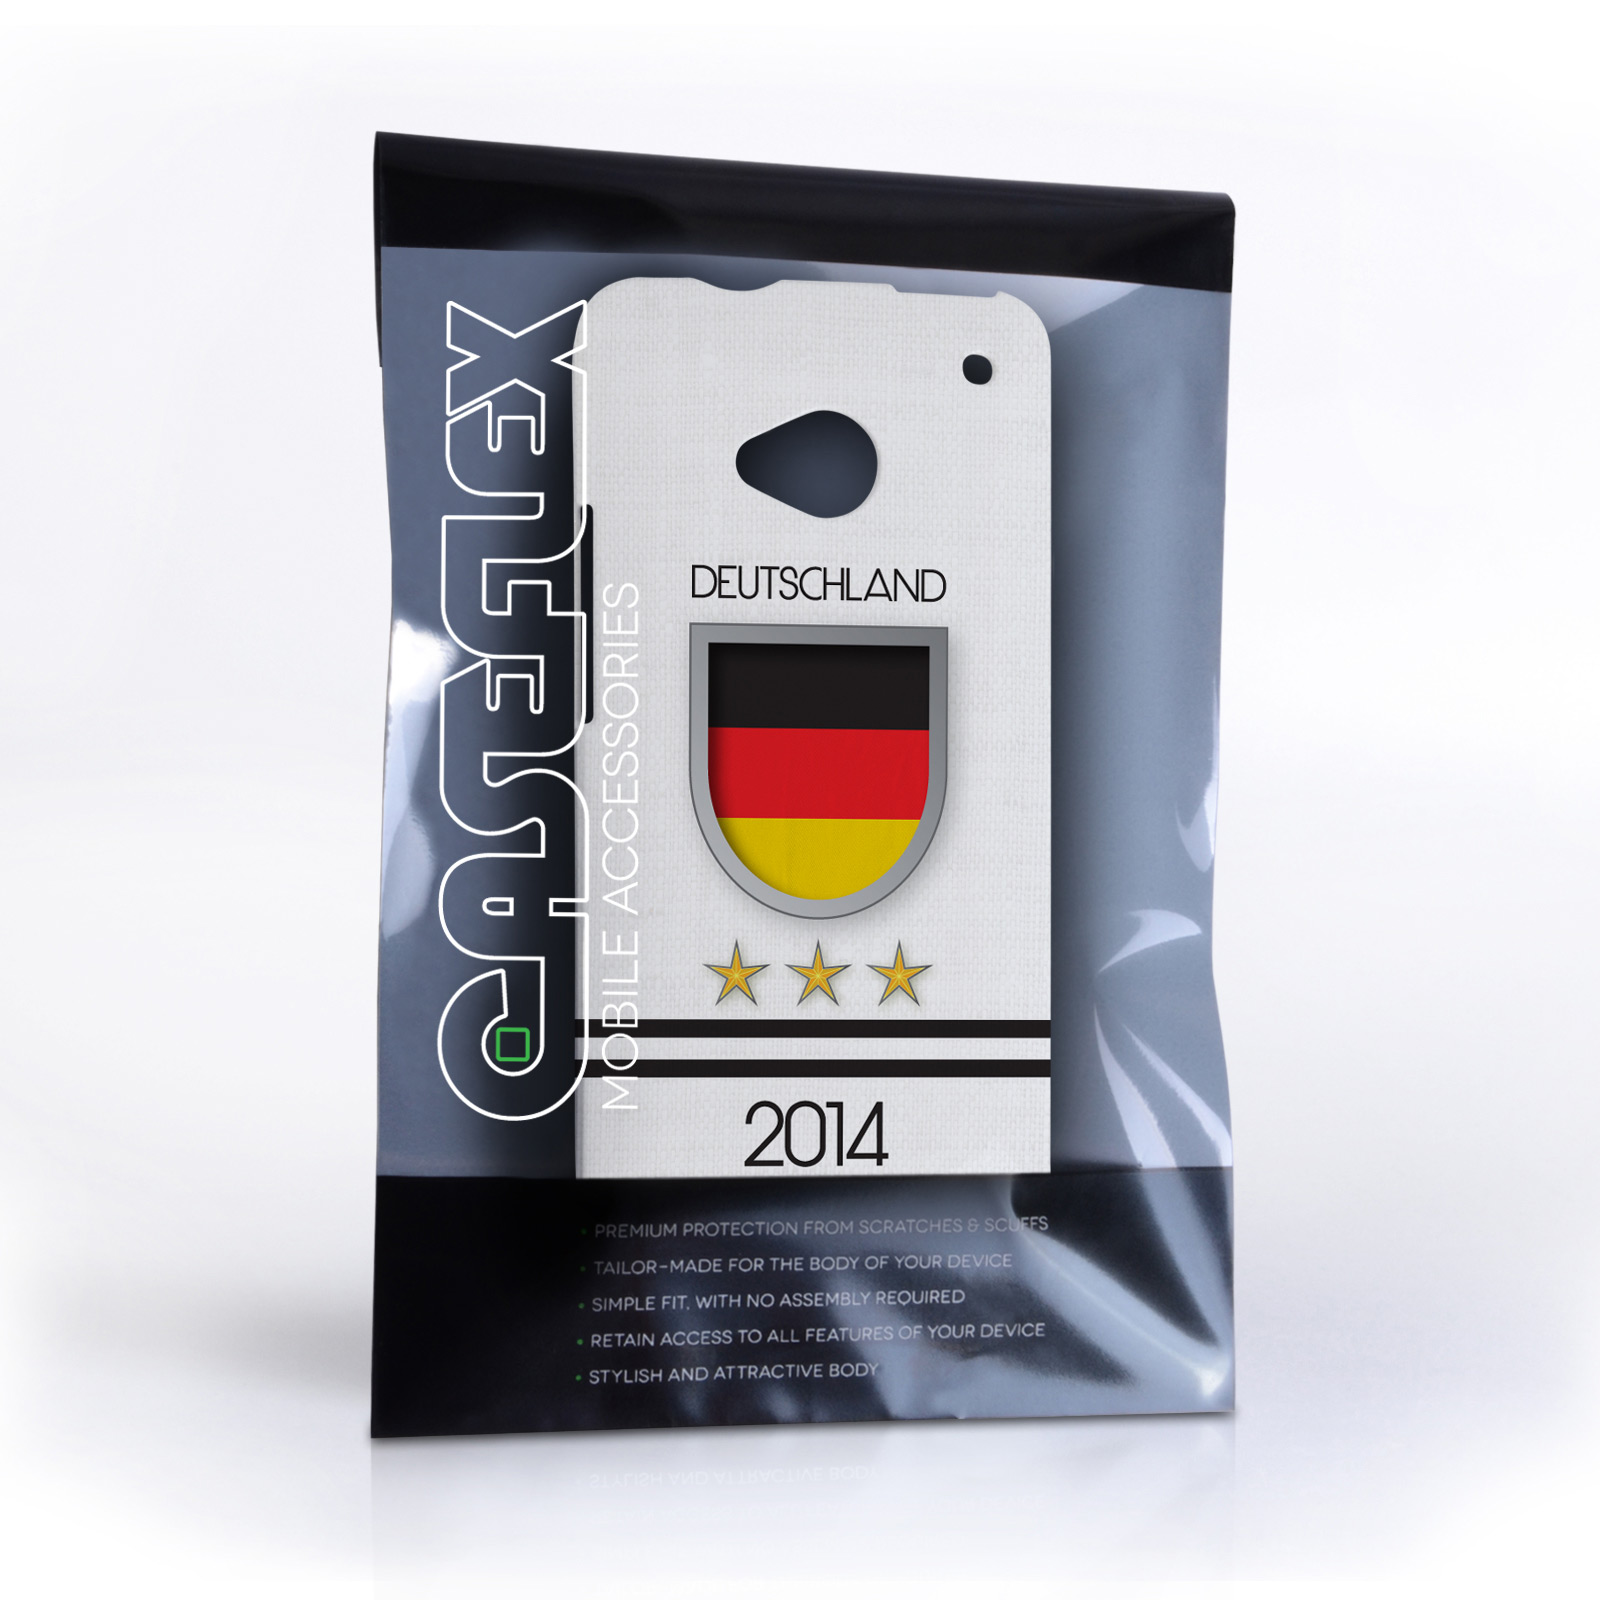 Caseflex HTC One Deutschland World Cup Case 